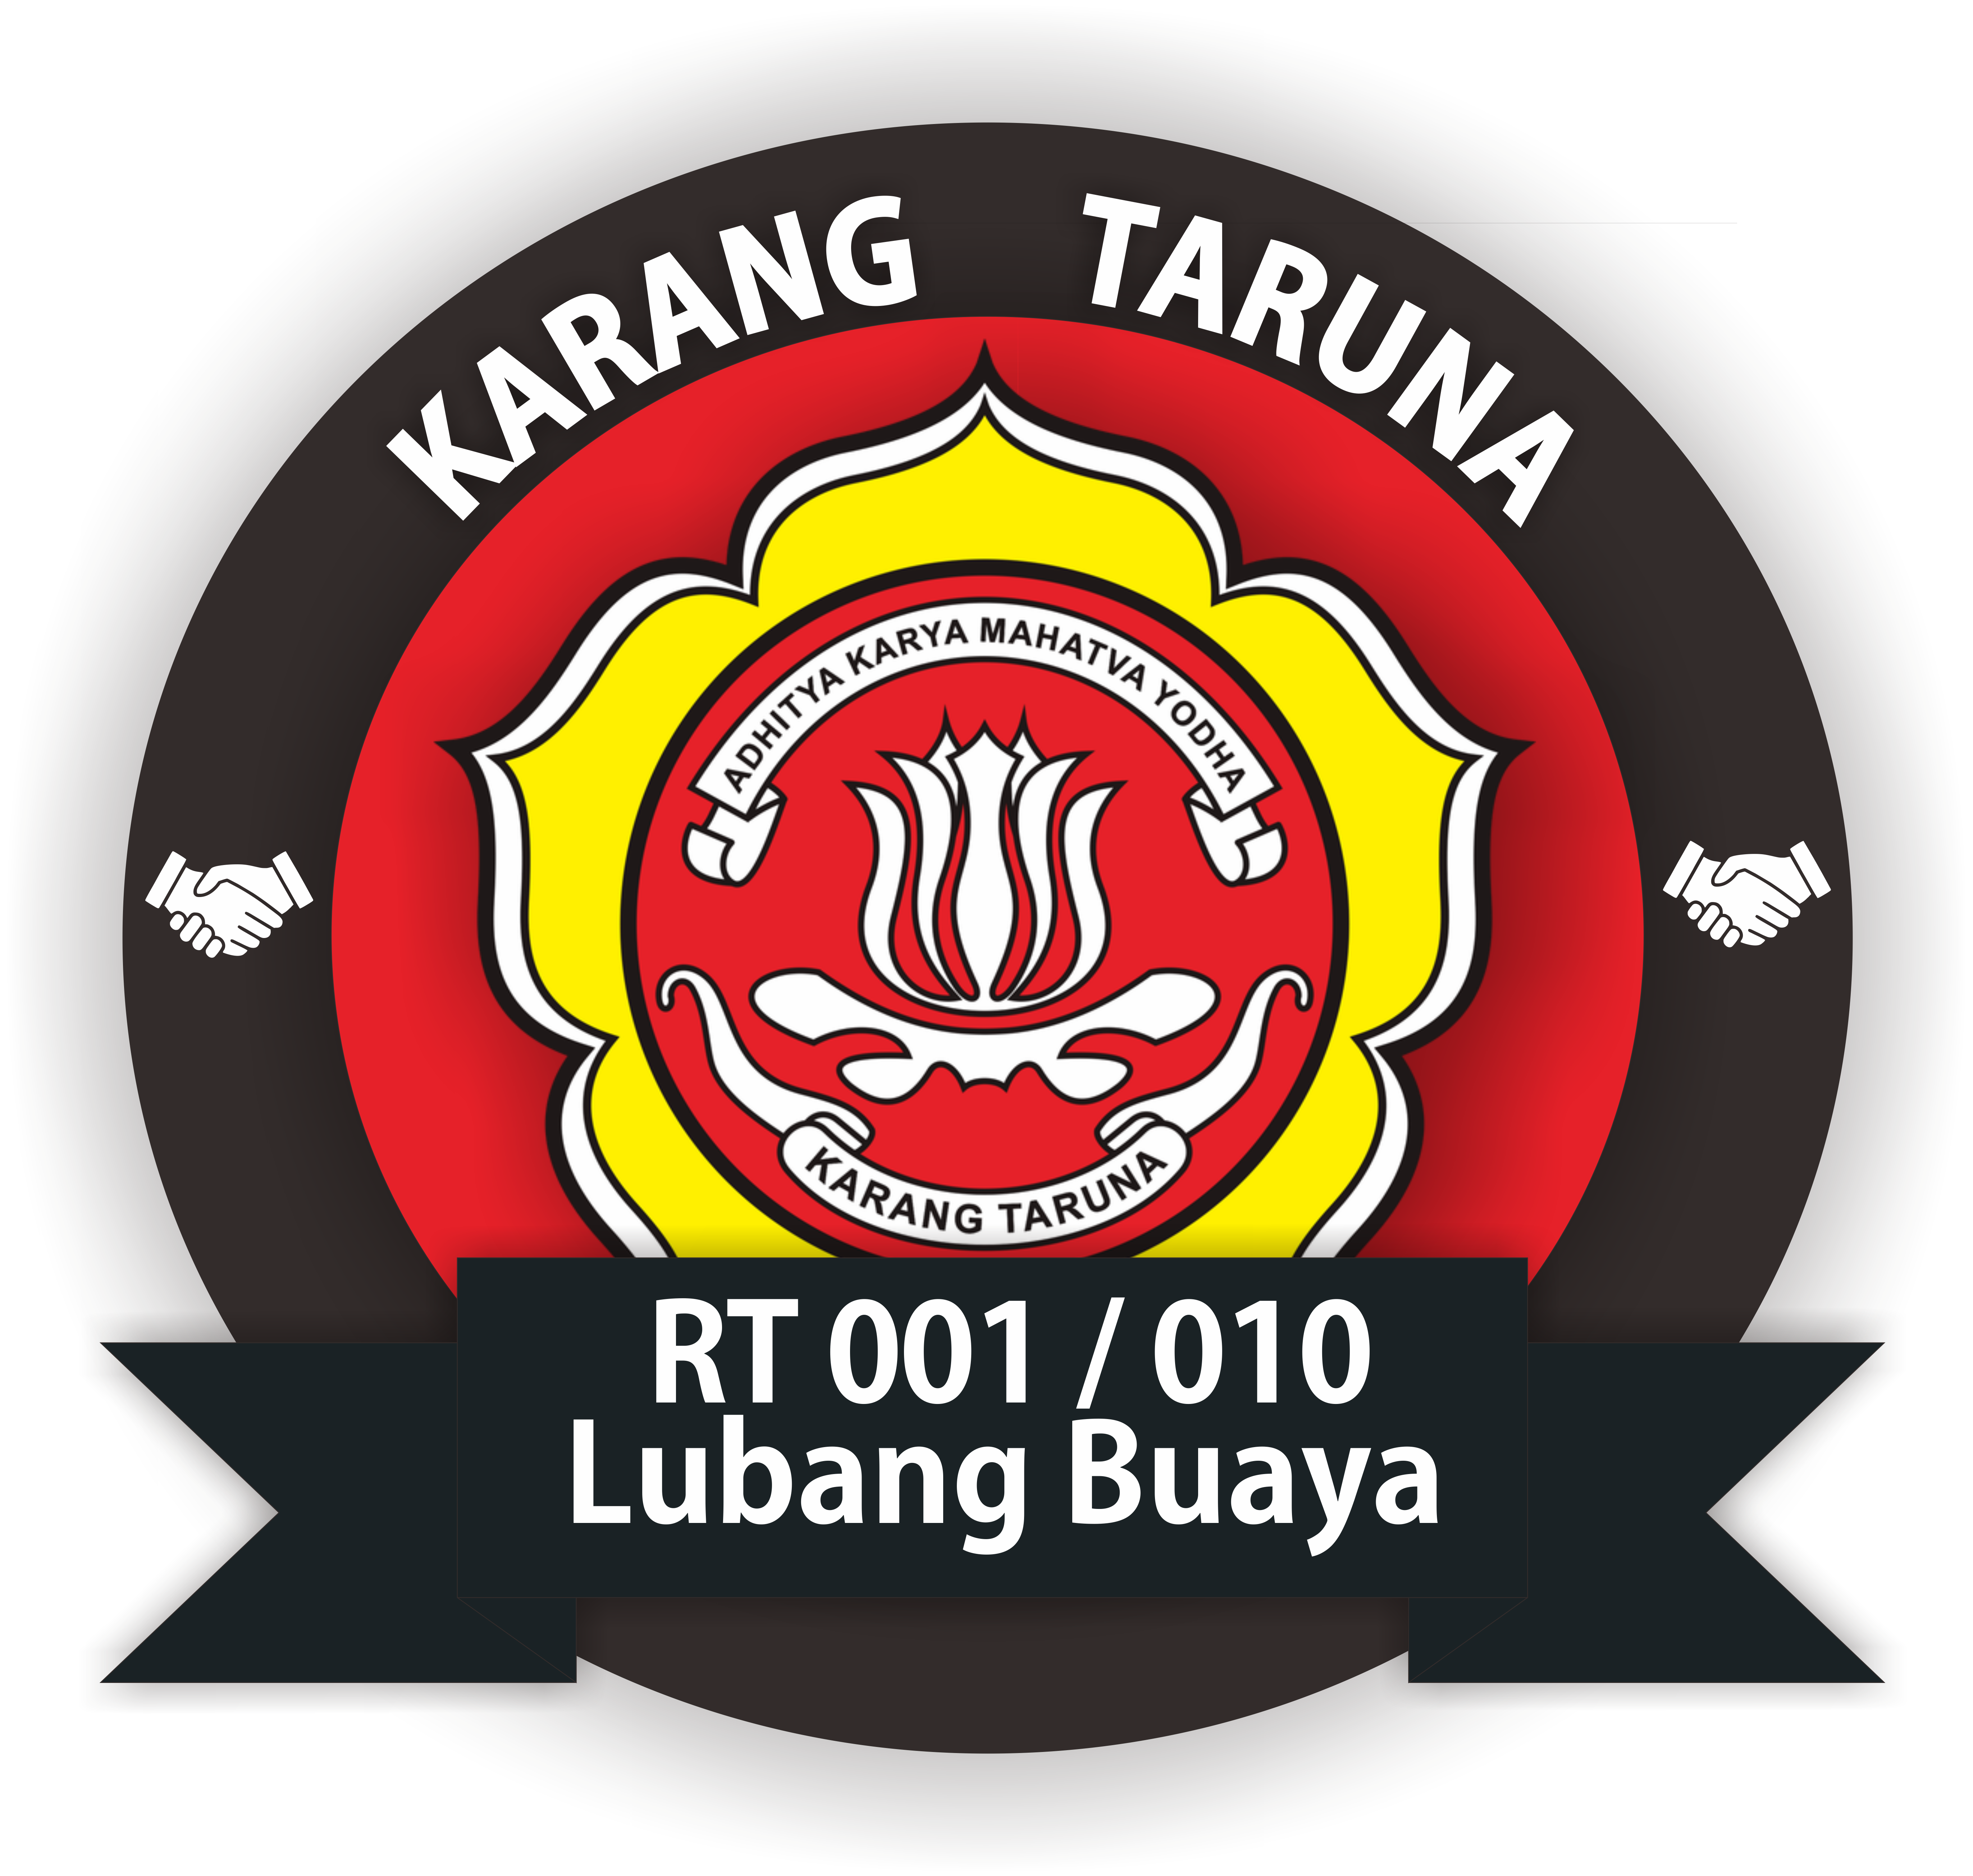 karang taruna png logo 31378